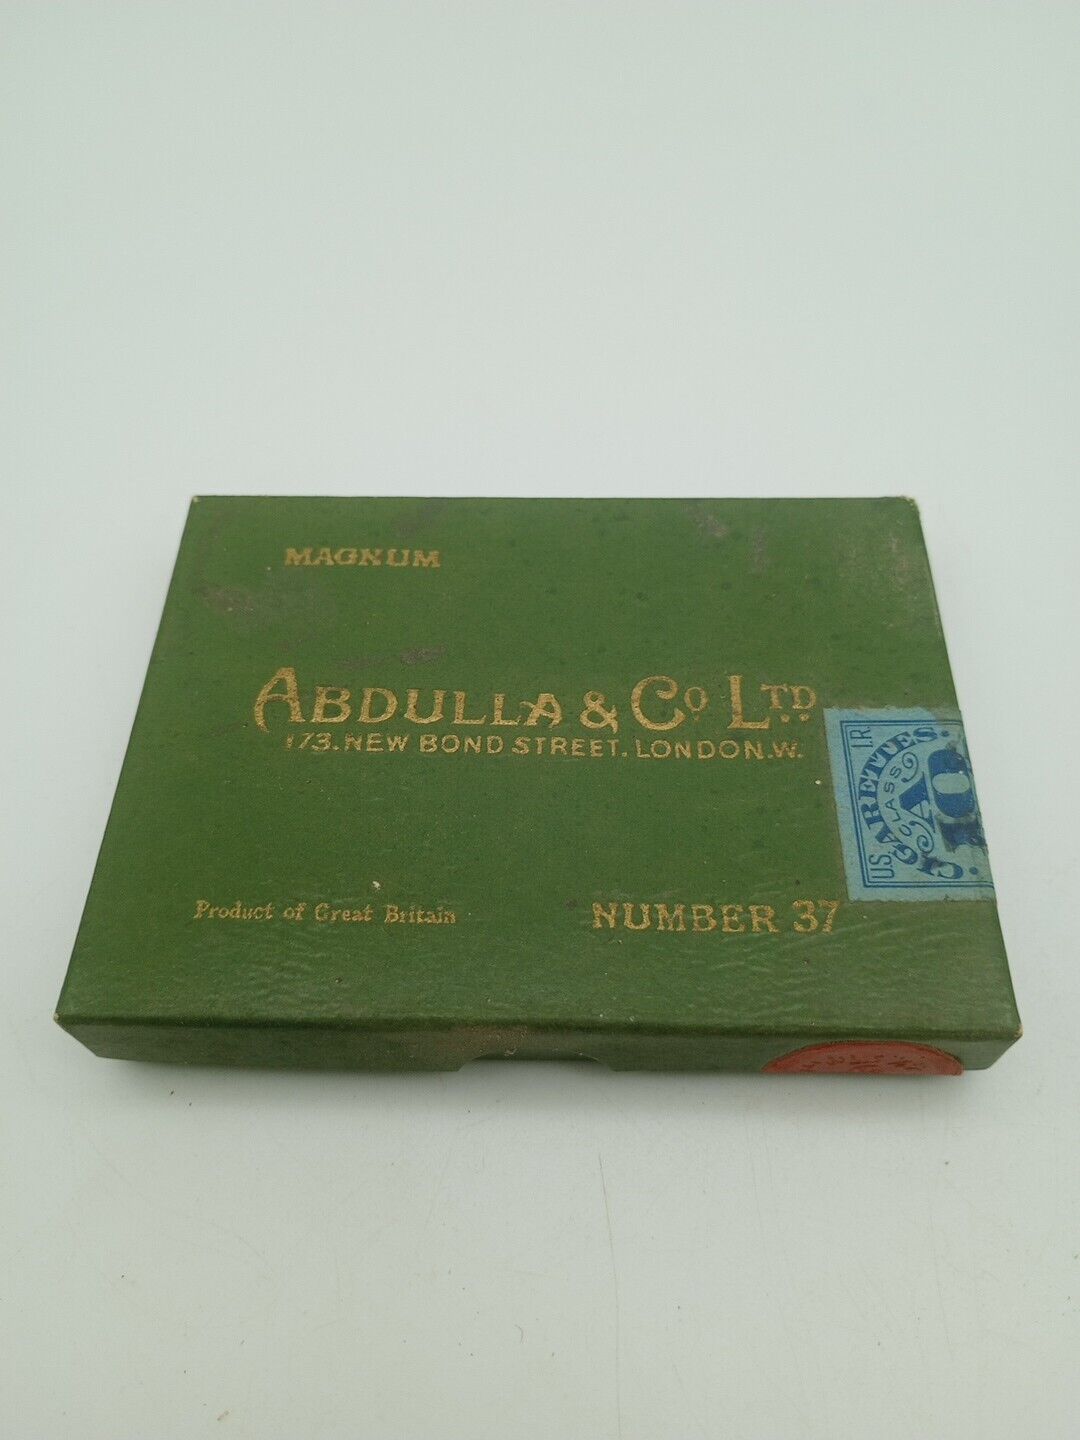 Vintage Magnum Abdulla & Co. Ltd Number 37 Cigarette Box (RARE)